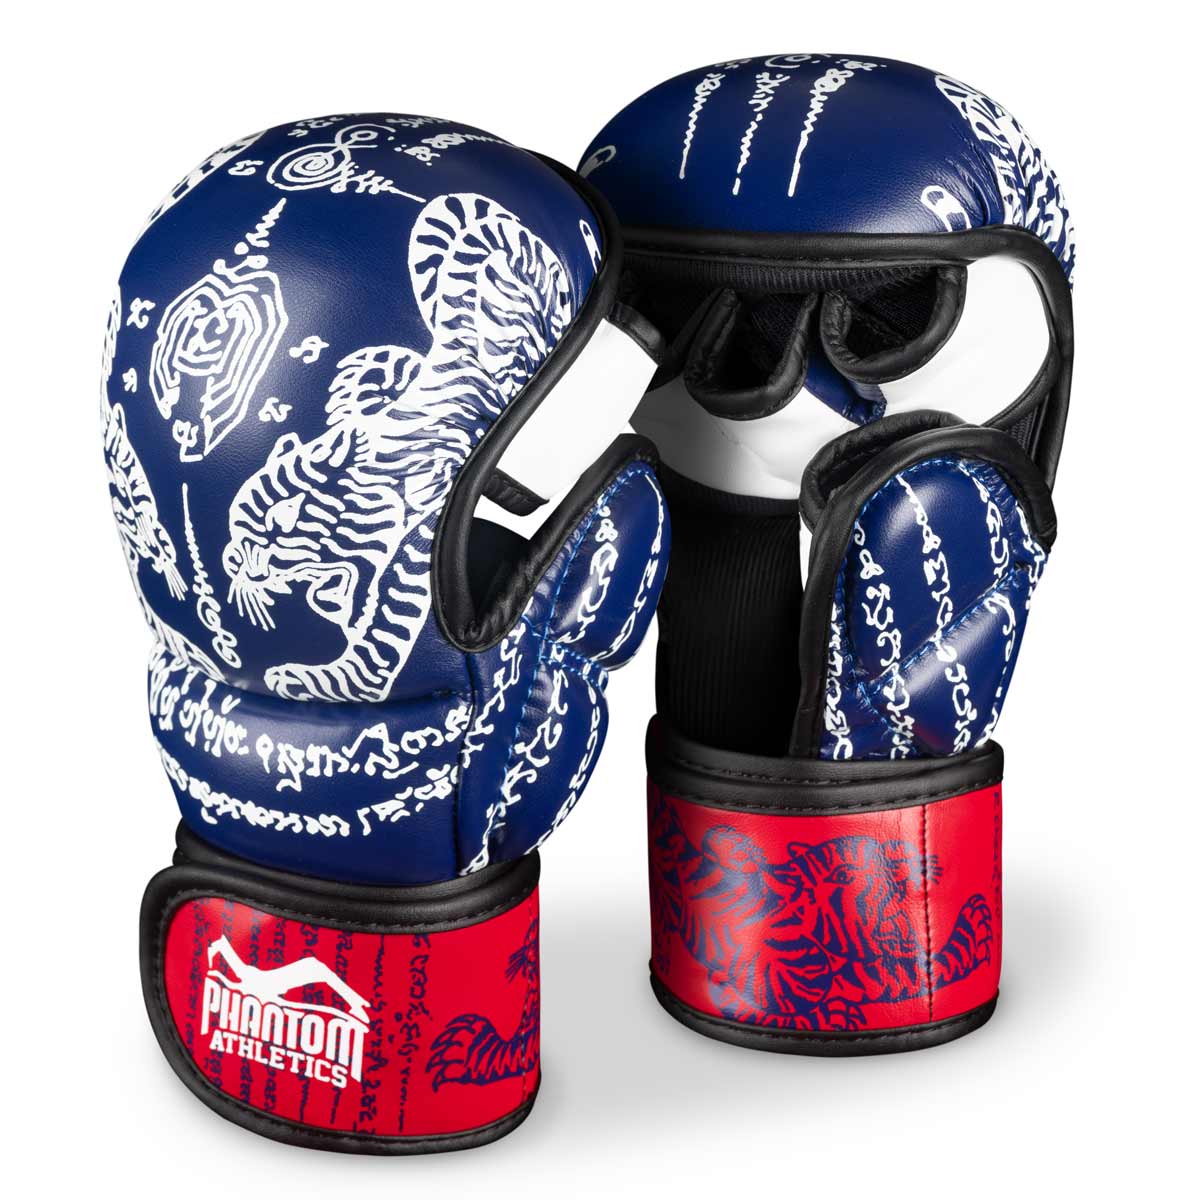 Phantom Muay Thai-handschoenen voor Thaiboksen en MMA-sparren, competitie en training. In het traditionele Sak Yant dessin en de kleur blauw/rood.